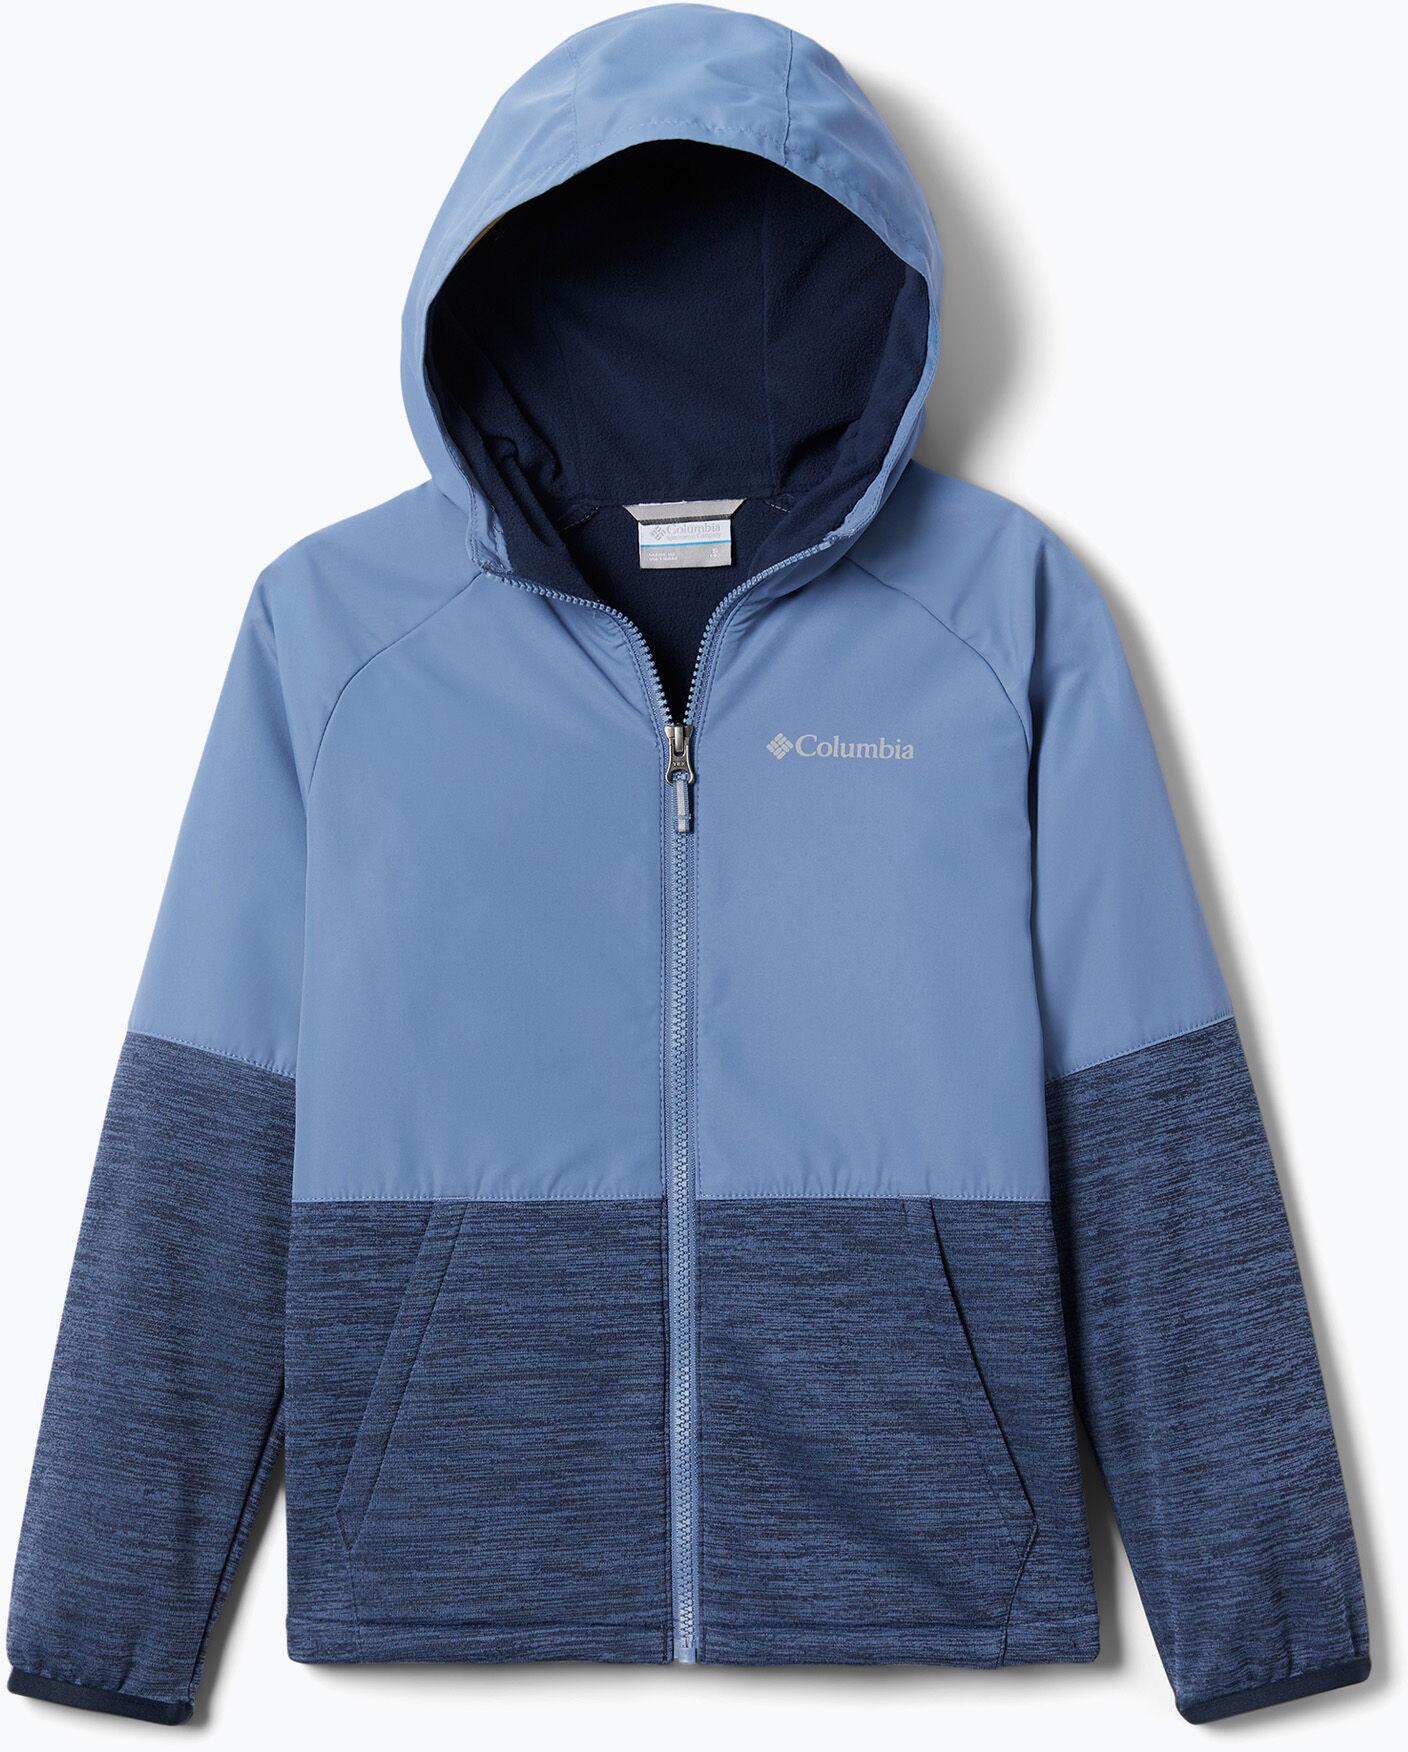 Bluza trekkingowa dziecięca Columbia Out-Shield Dry niebieska 1931061 WYSYŁKA W 24H 30 DNI NA ZWROT